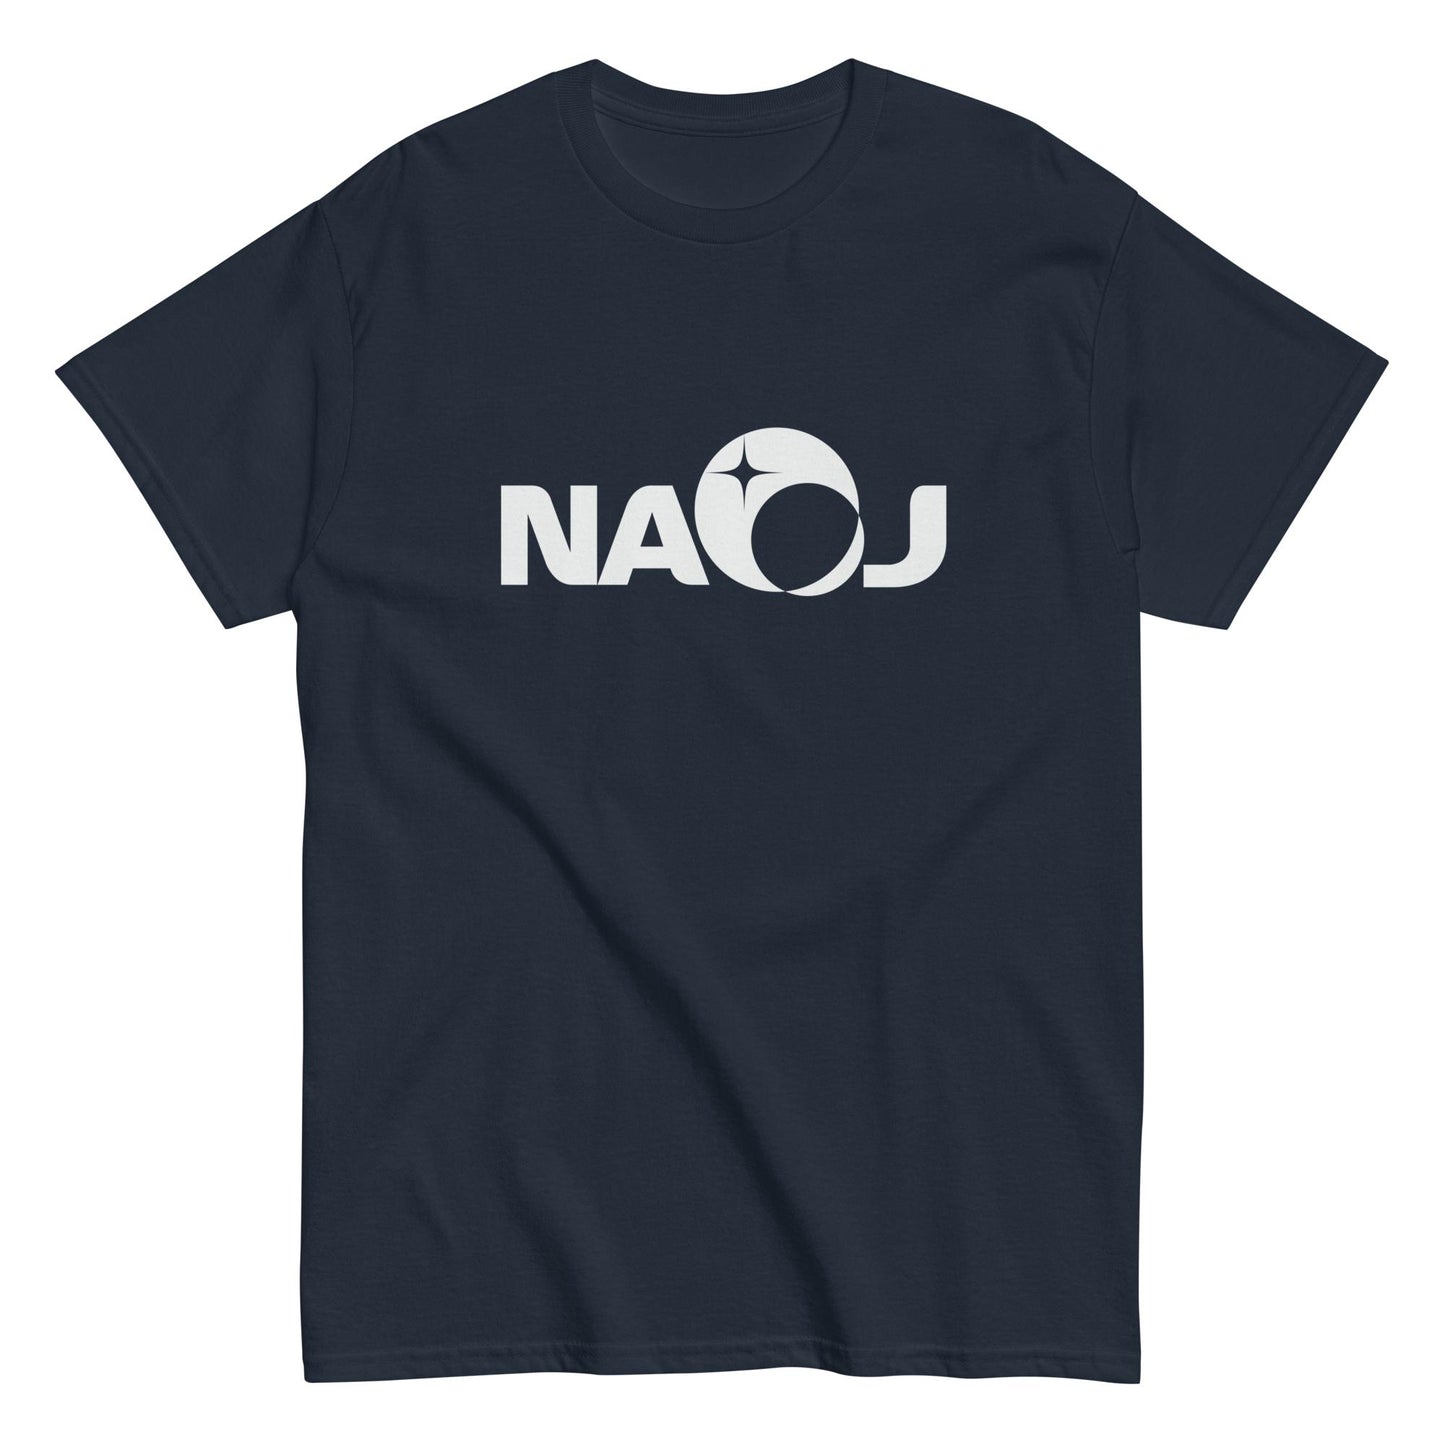 国立天文台 NAOJ ロゴマーク ヘビーウェイト Tシャツ ネイビー M 00